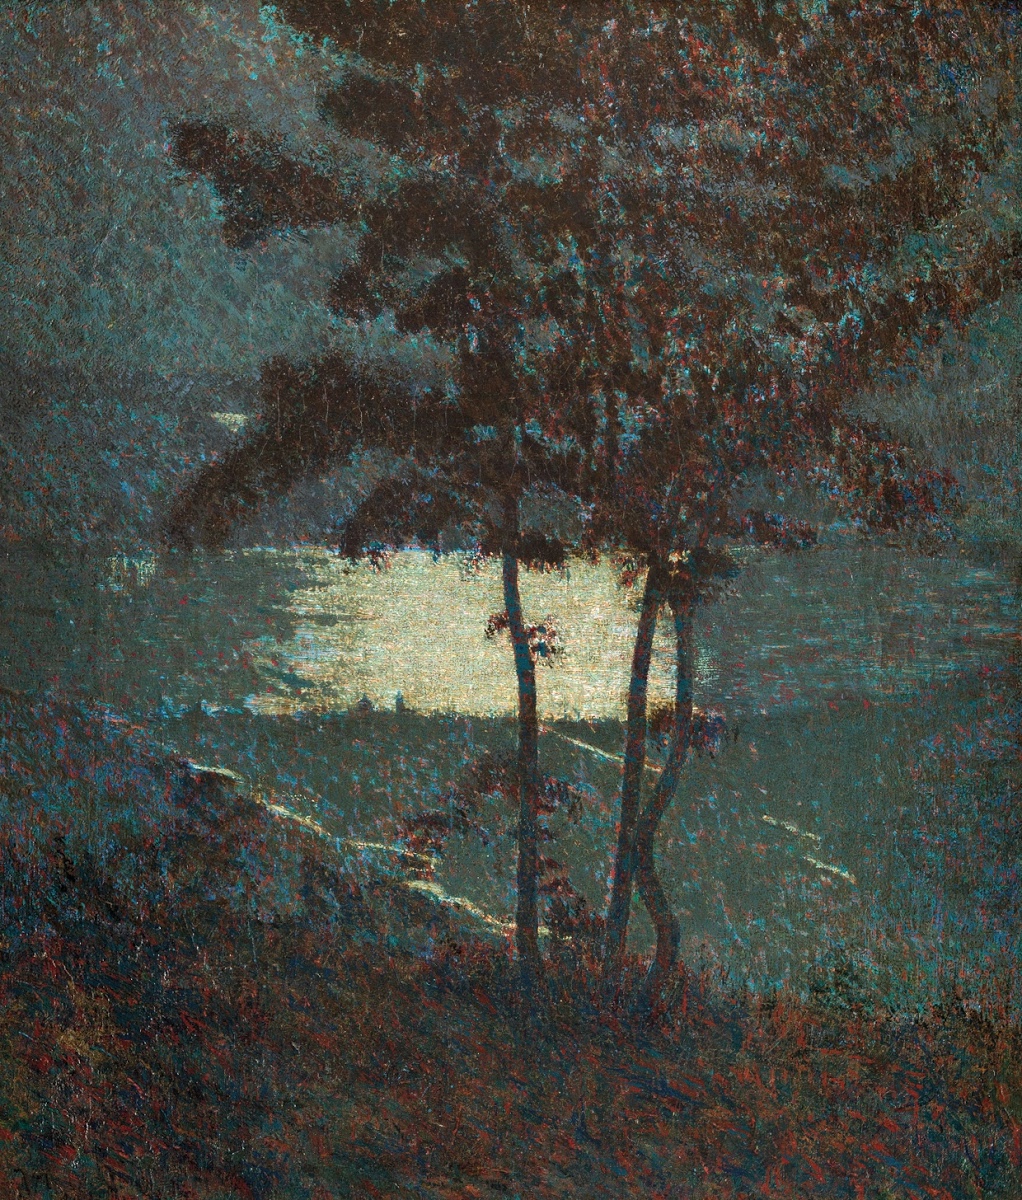 Vittore Grubicy de Dragon, Poema invernale. Notte lunare (Chiaro di luna) (1894; olio su tela, 64,5 x 55,5 cm; Milano, GAM, inv. 1717)
